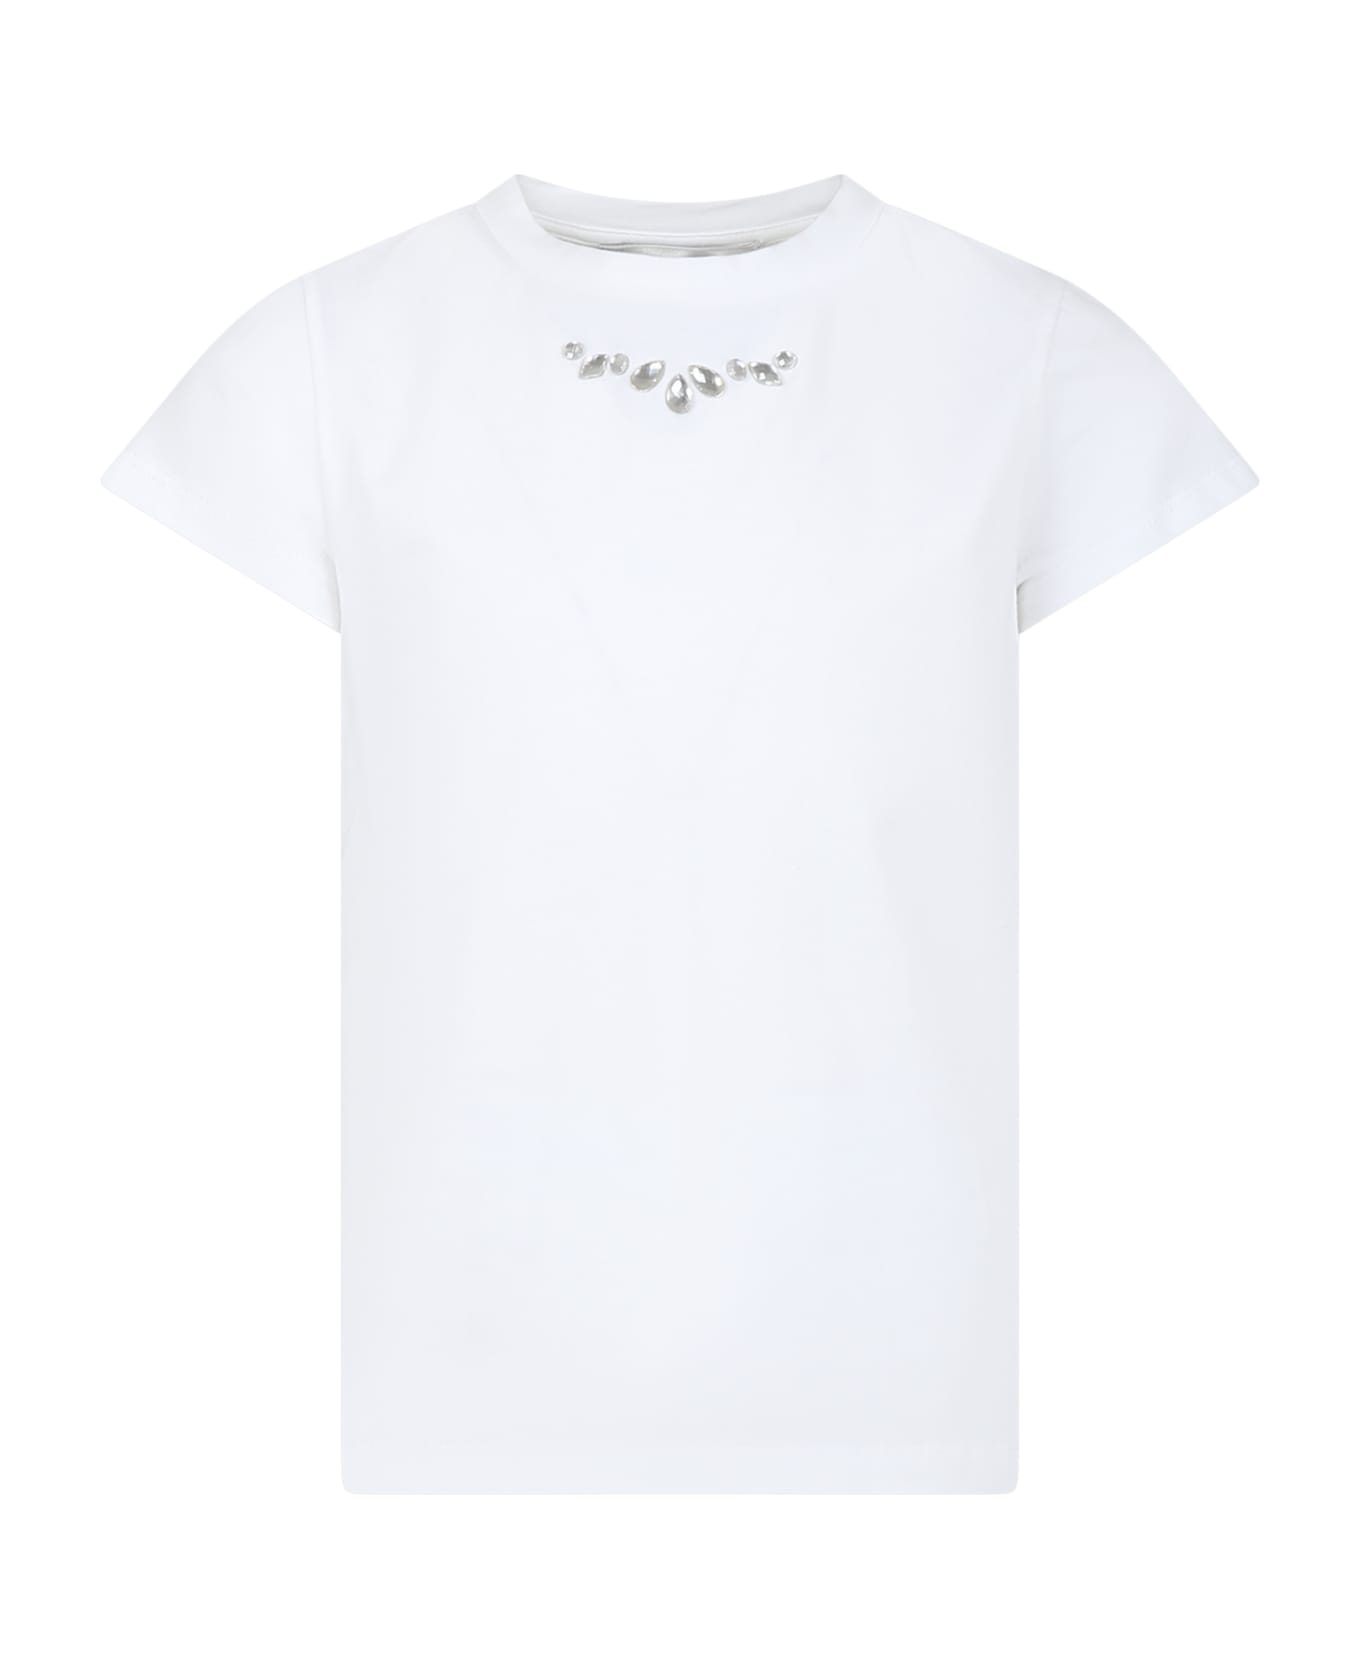 Simonetta White T-shirt For Girl - White